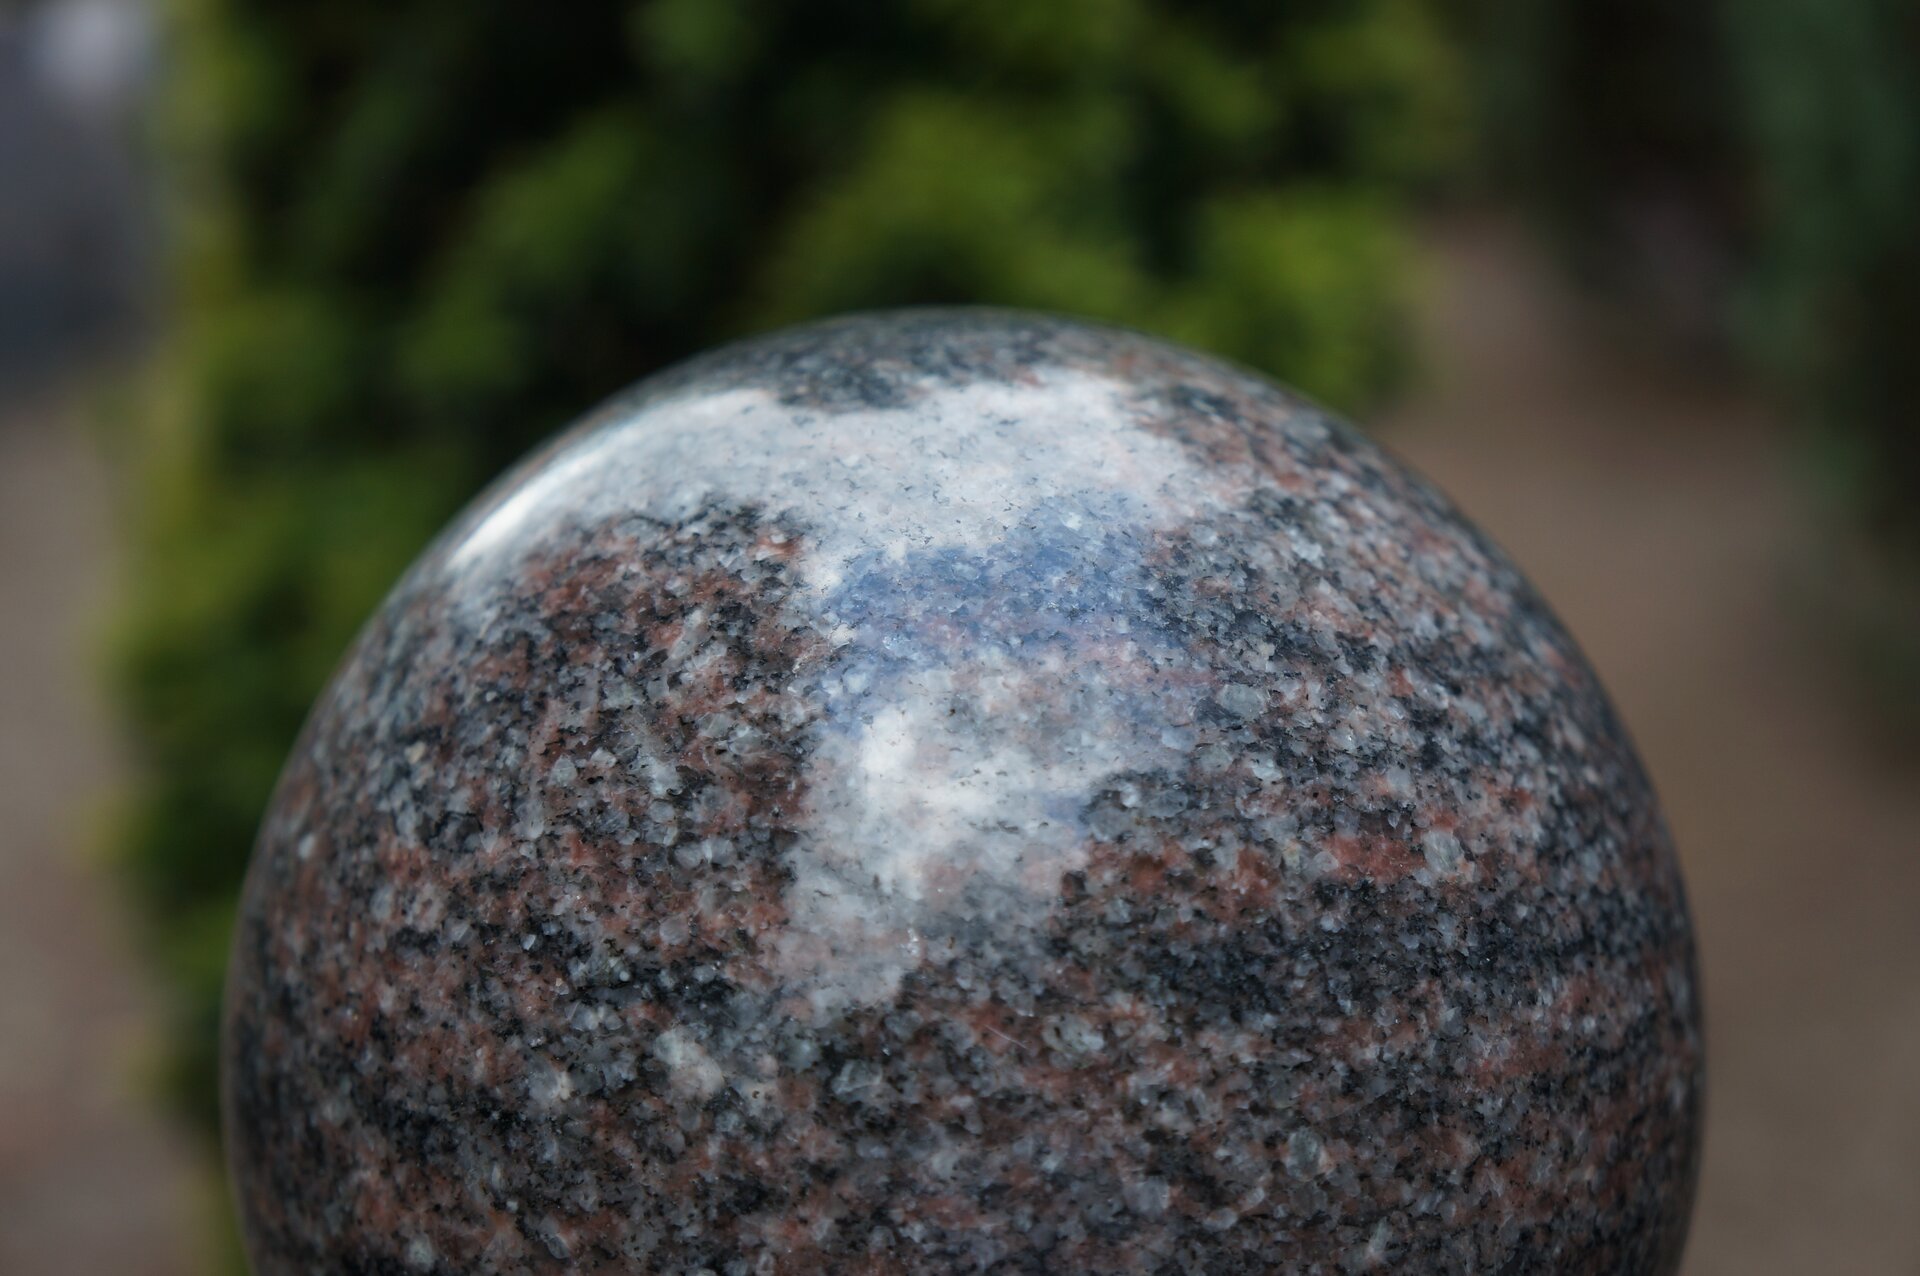 Ilustracja przedstawia rzeźbę pt. „Kula”. Na zdjęciu widoczny jest fragment kuli wykonanej z granitu. Na brązowo‑biało‑czarnej powierzchni odbija się światło. Tło jest rozmazane.